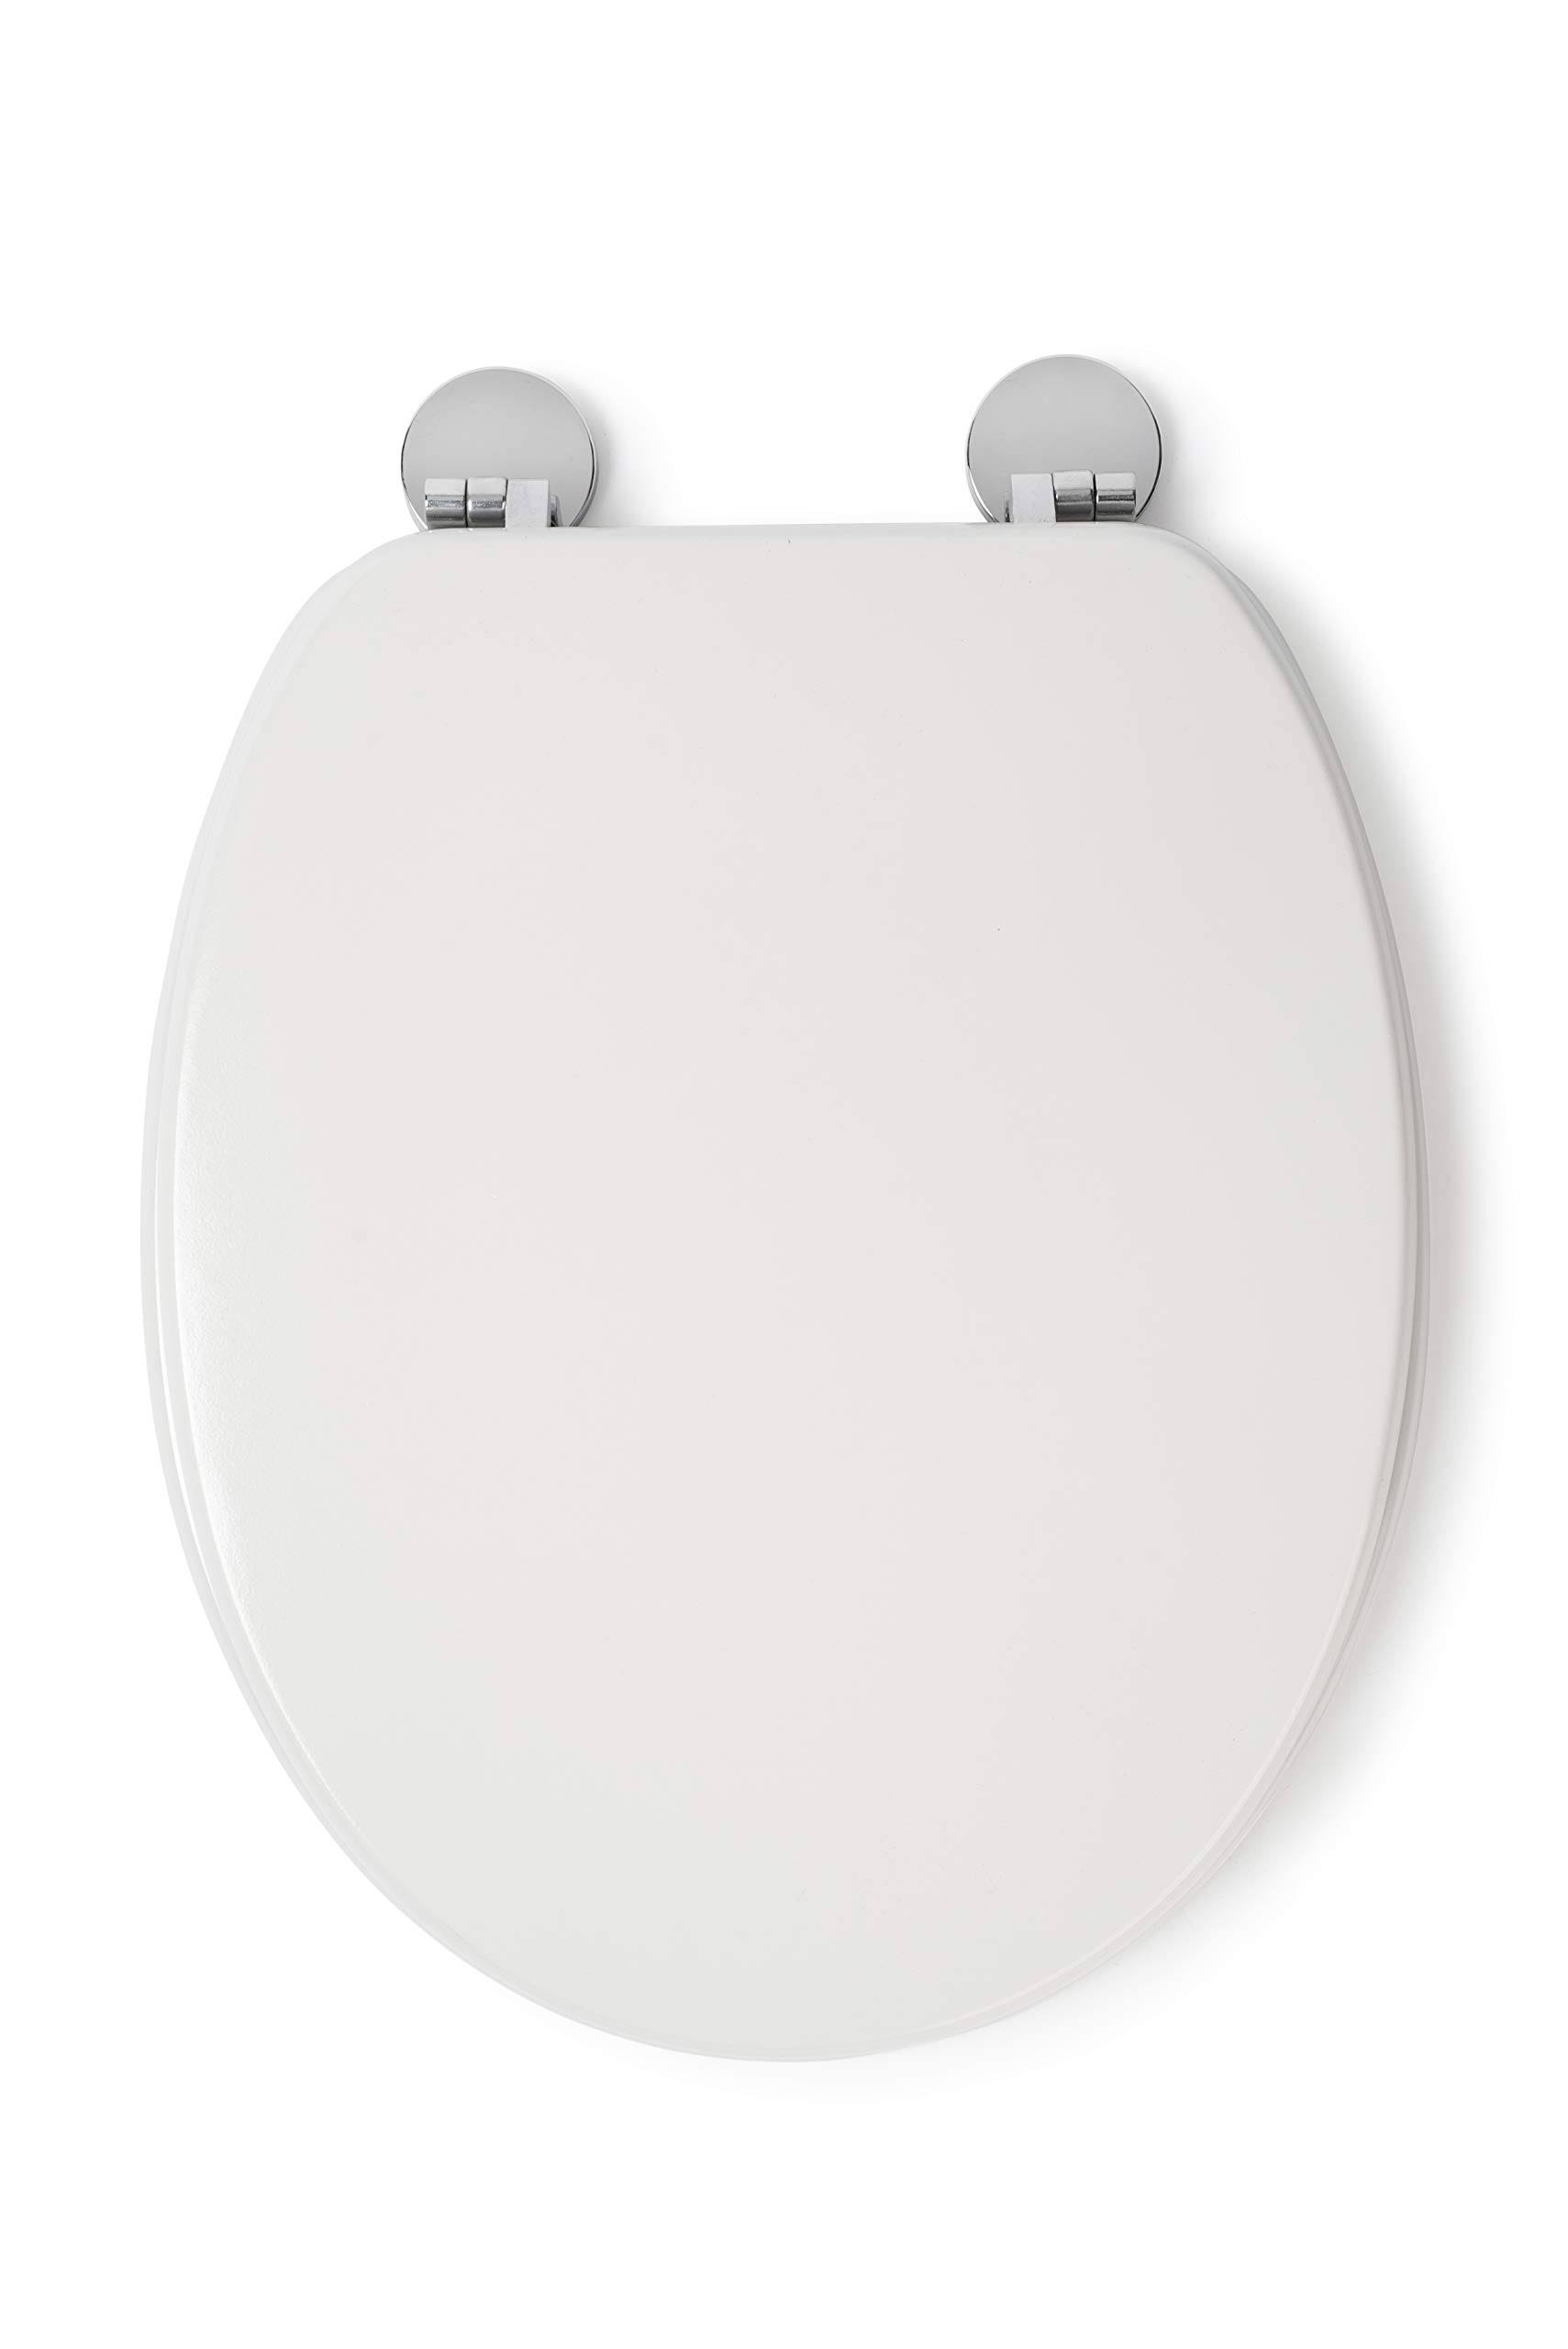 Croydex Flexi Fix Kielder Toilet Seat White